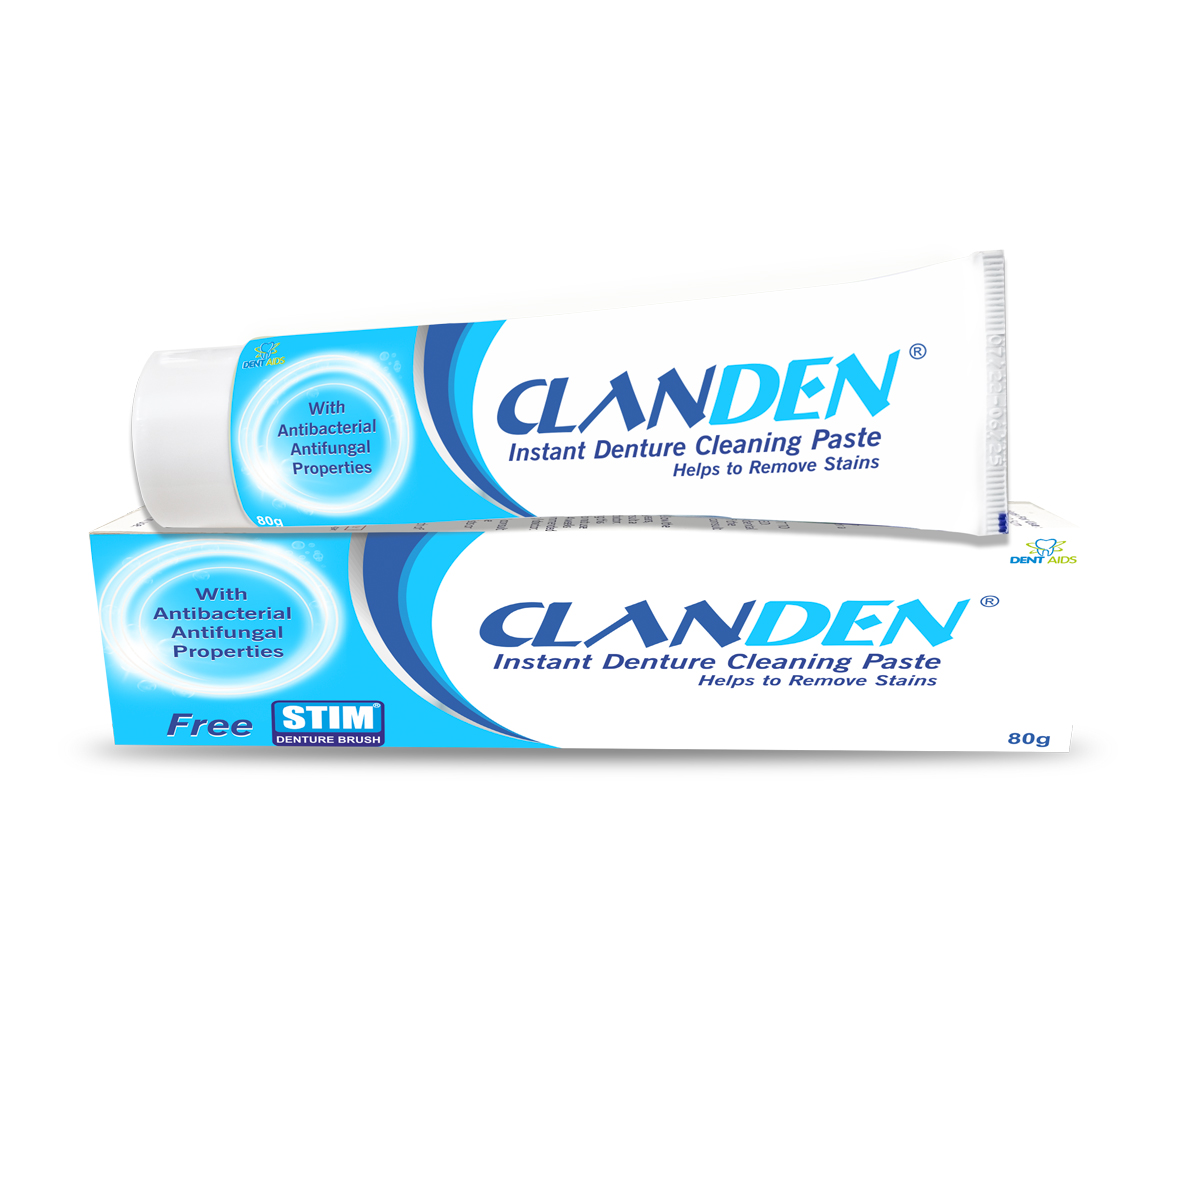 clanden-denture-cleaning-paste